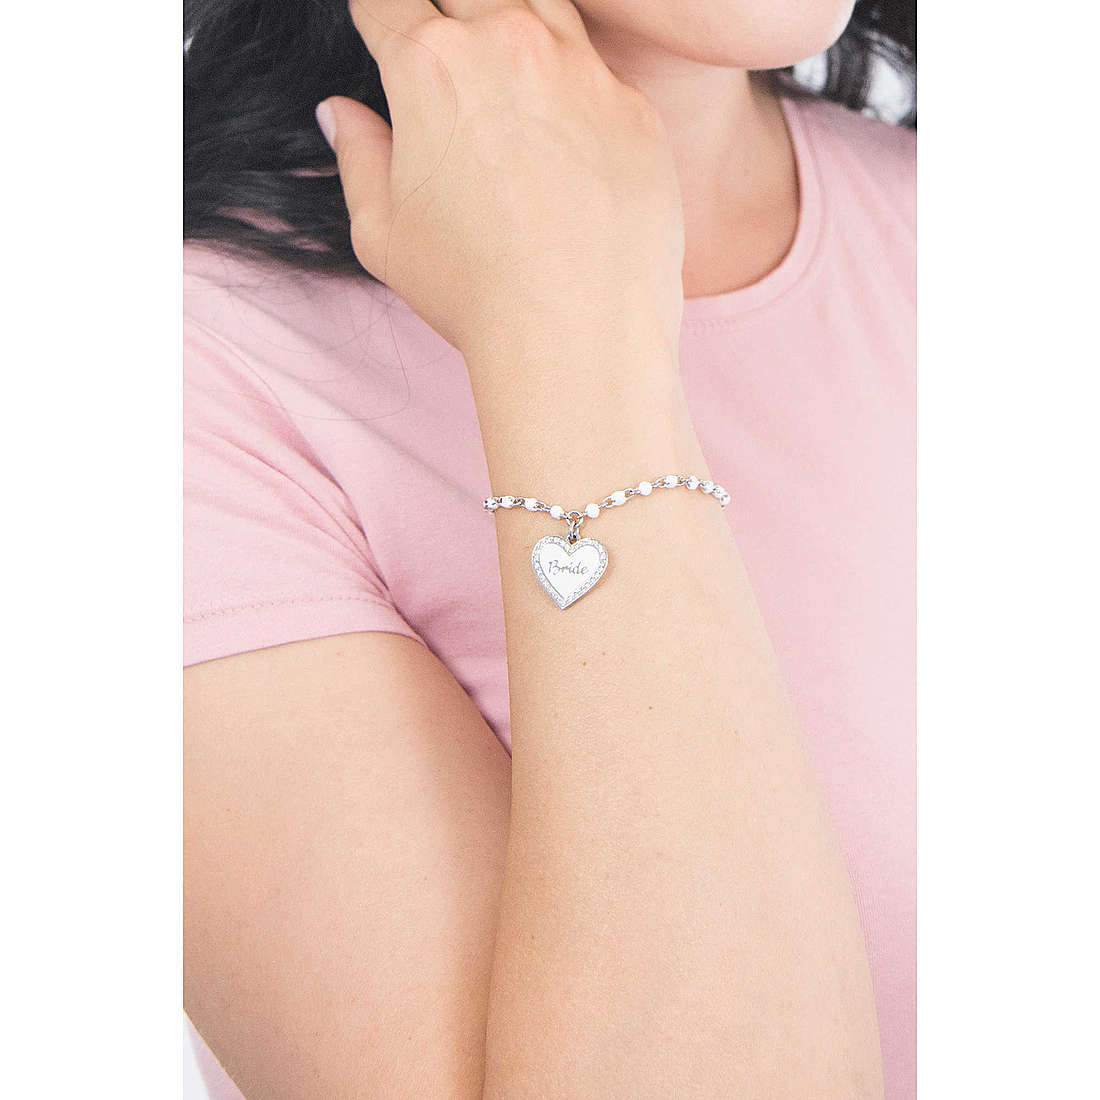 Kidult bracelets Special Moments woman 731847 wearing